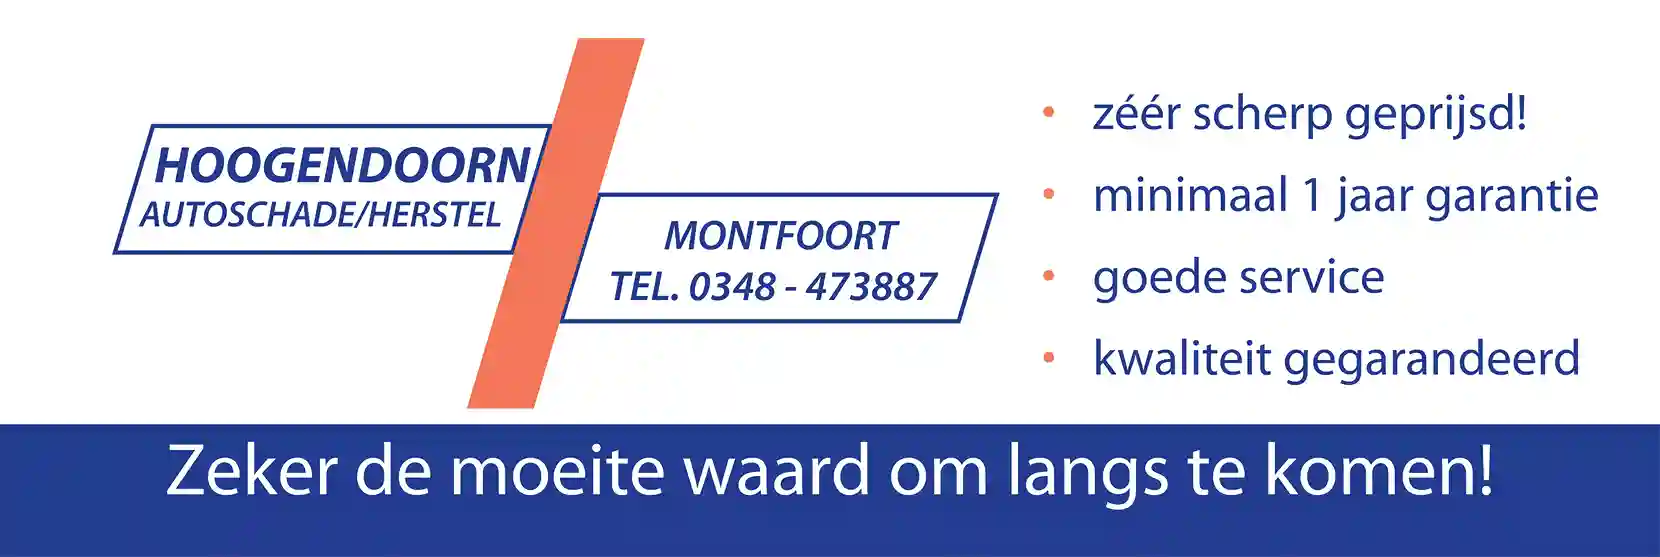 Hoogendoorn Autoschade Herstel 150x50 (1)_11zon